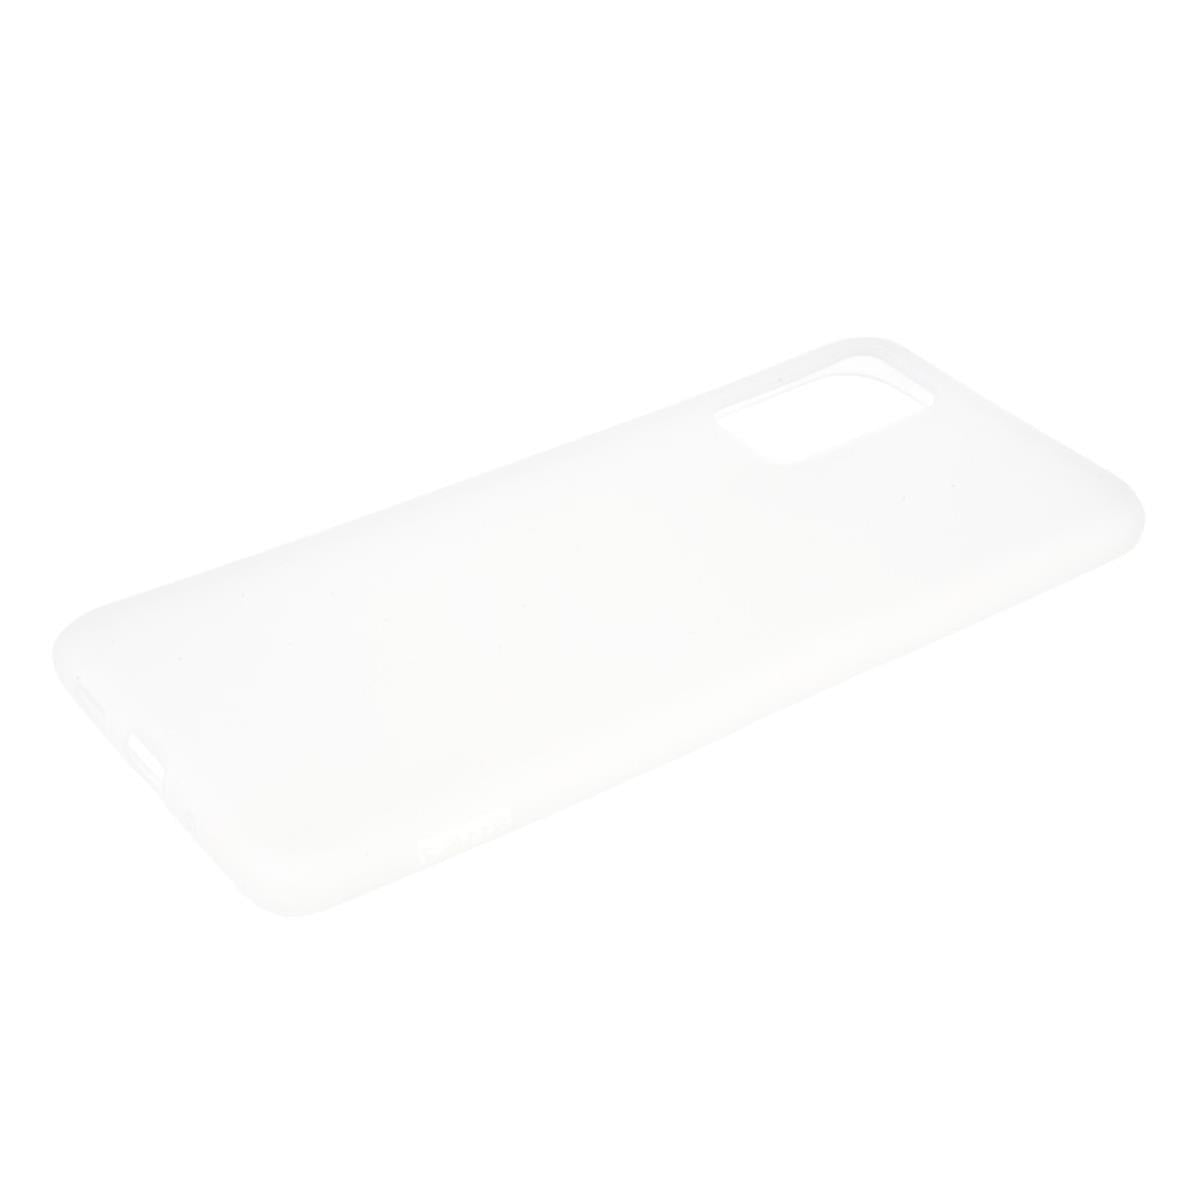 Hülle für Samsung Galaxy S10 Lite Handyhülle Silikon Case Cover Etui Matt Weiß